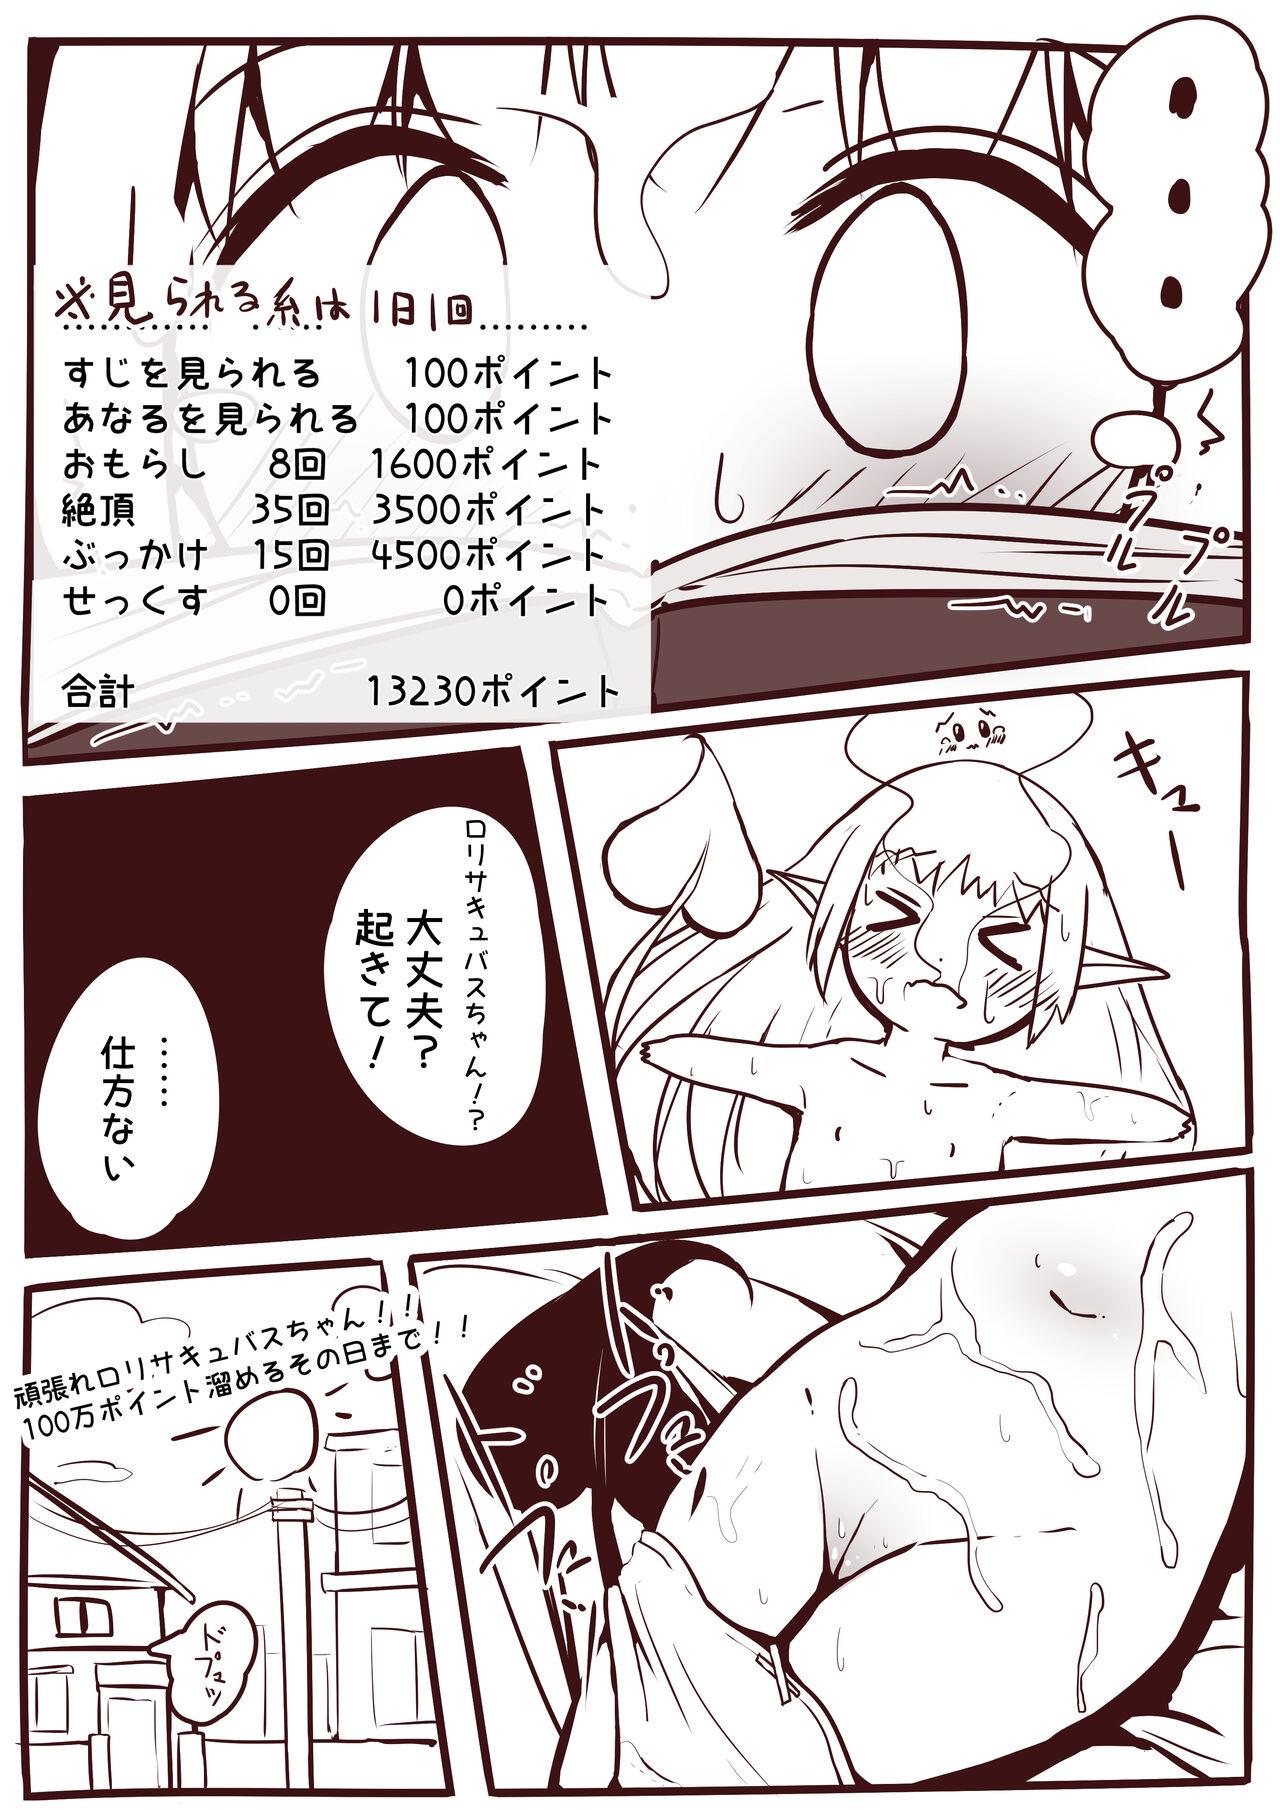 [Motiyuki] Ecchi na Koto ga Nigate na Loli Succubus-chan Manga 1-3 23